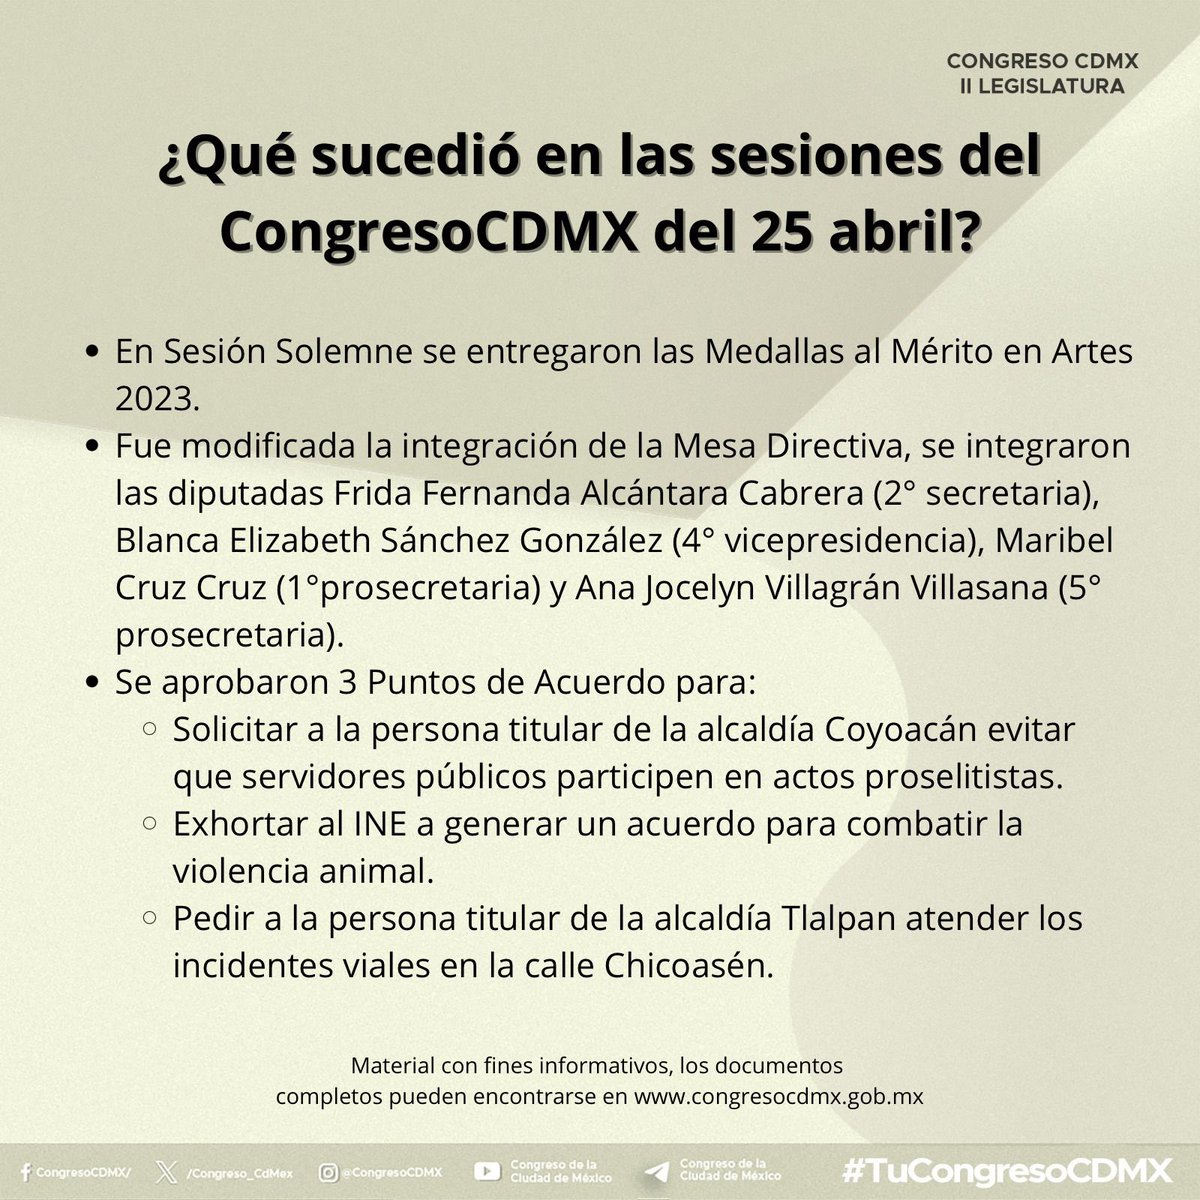 ▶️💬 Les compartimos el #ResumenInformativo de las noticias más destacadas del #CongresoCDMX. Aquí los detalles.